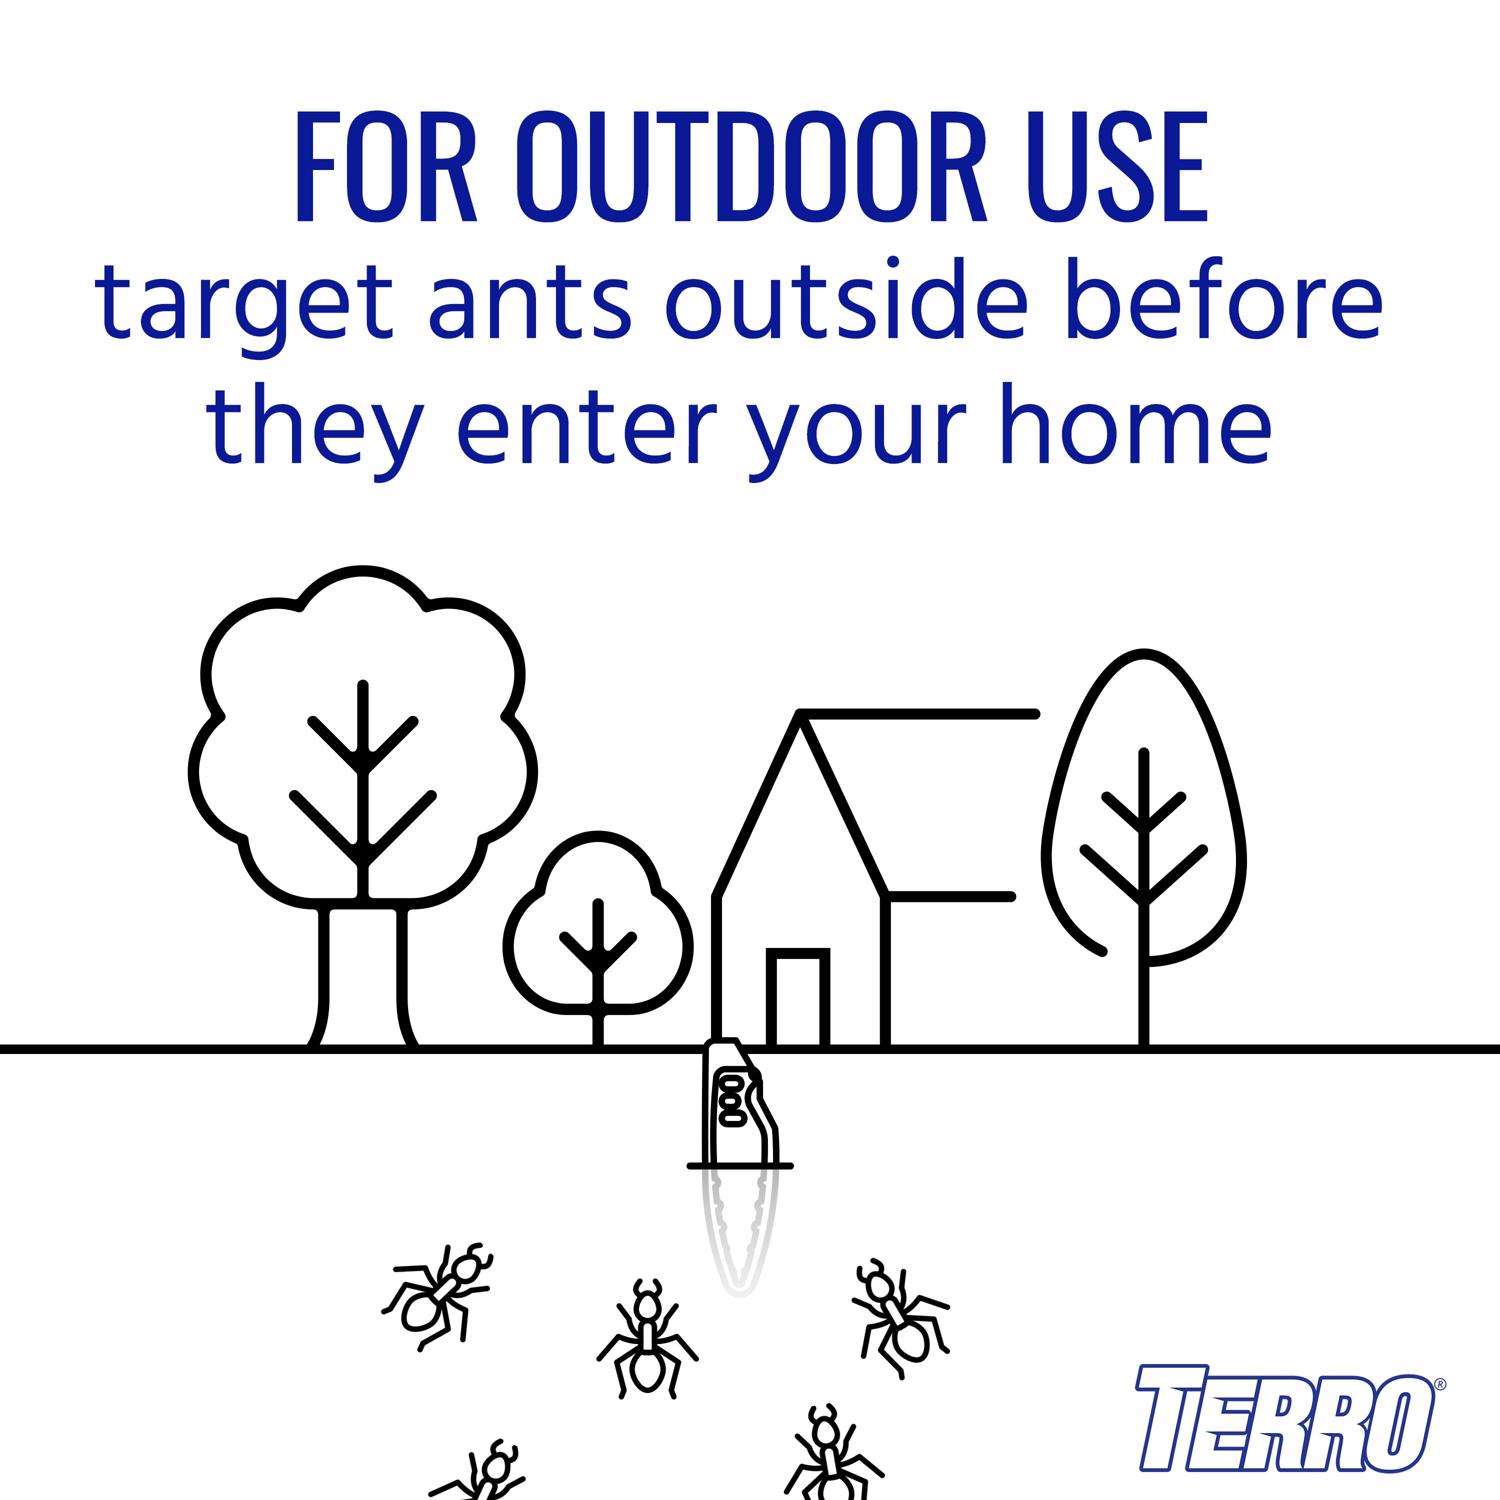 TERRO, 8 Pack Outdoor Liquid Ant Bait Stakes, Bonus 2 Liquid Ant Bait  Stations